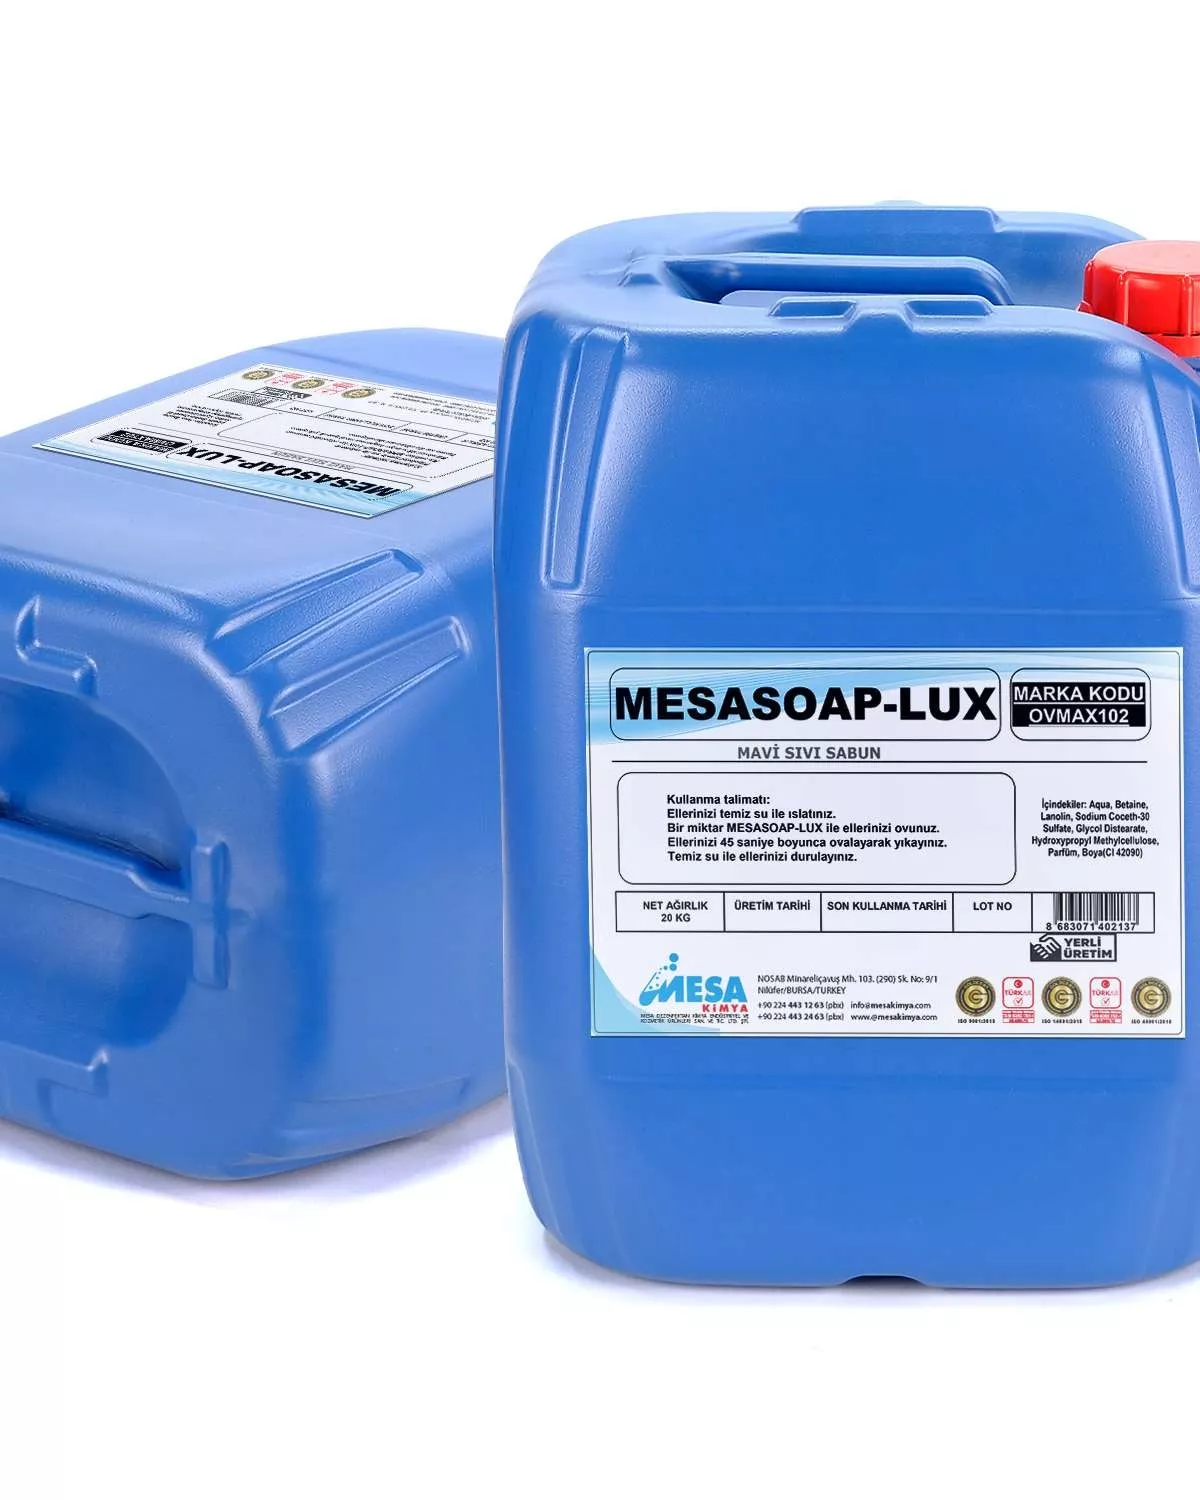 Mesasoap-lux mavi sıvı sabun fiyatları